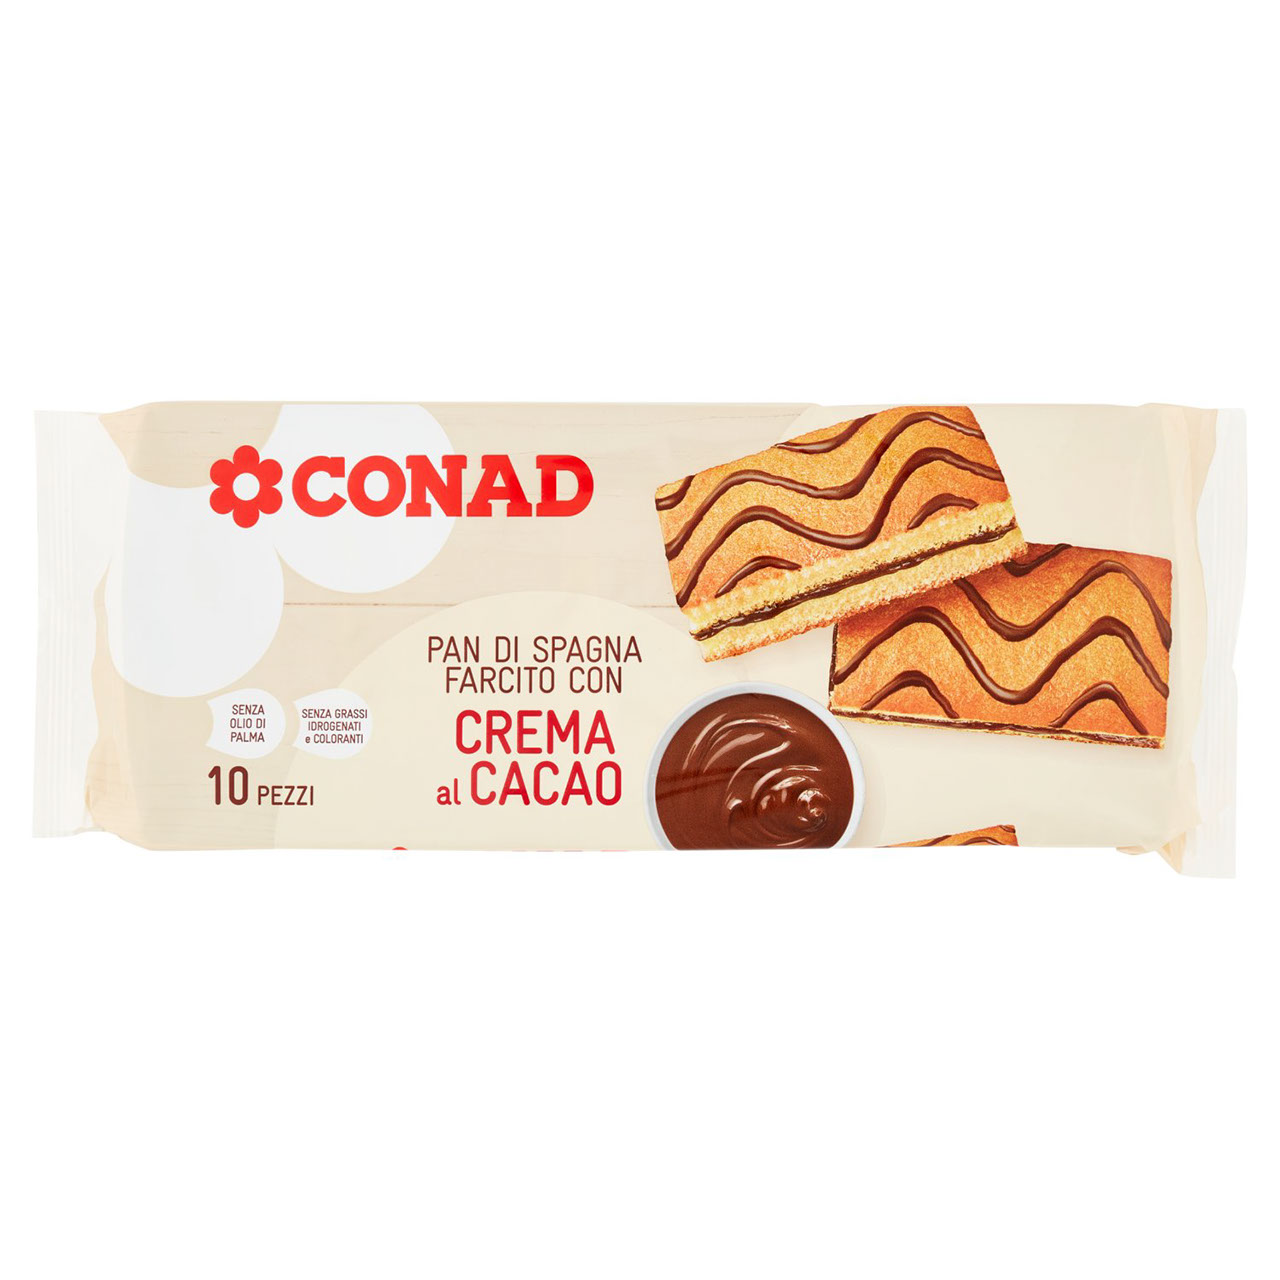 Pan di Spagna Farcito con Crema al Cacao Conad